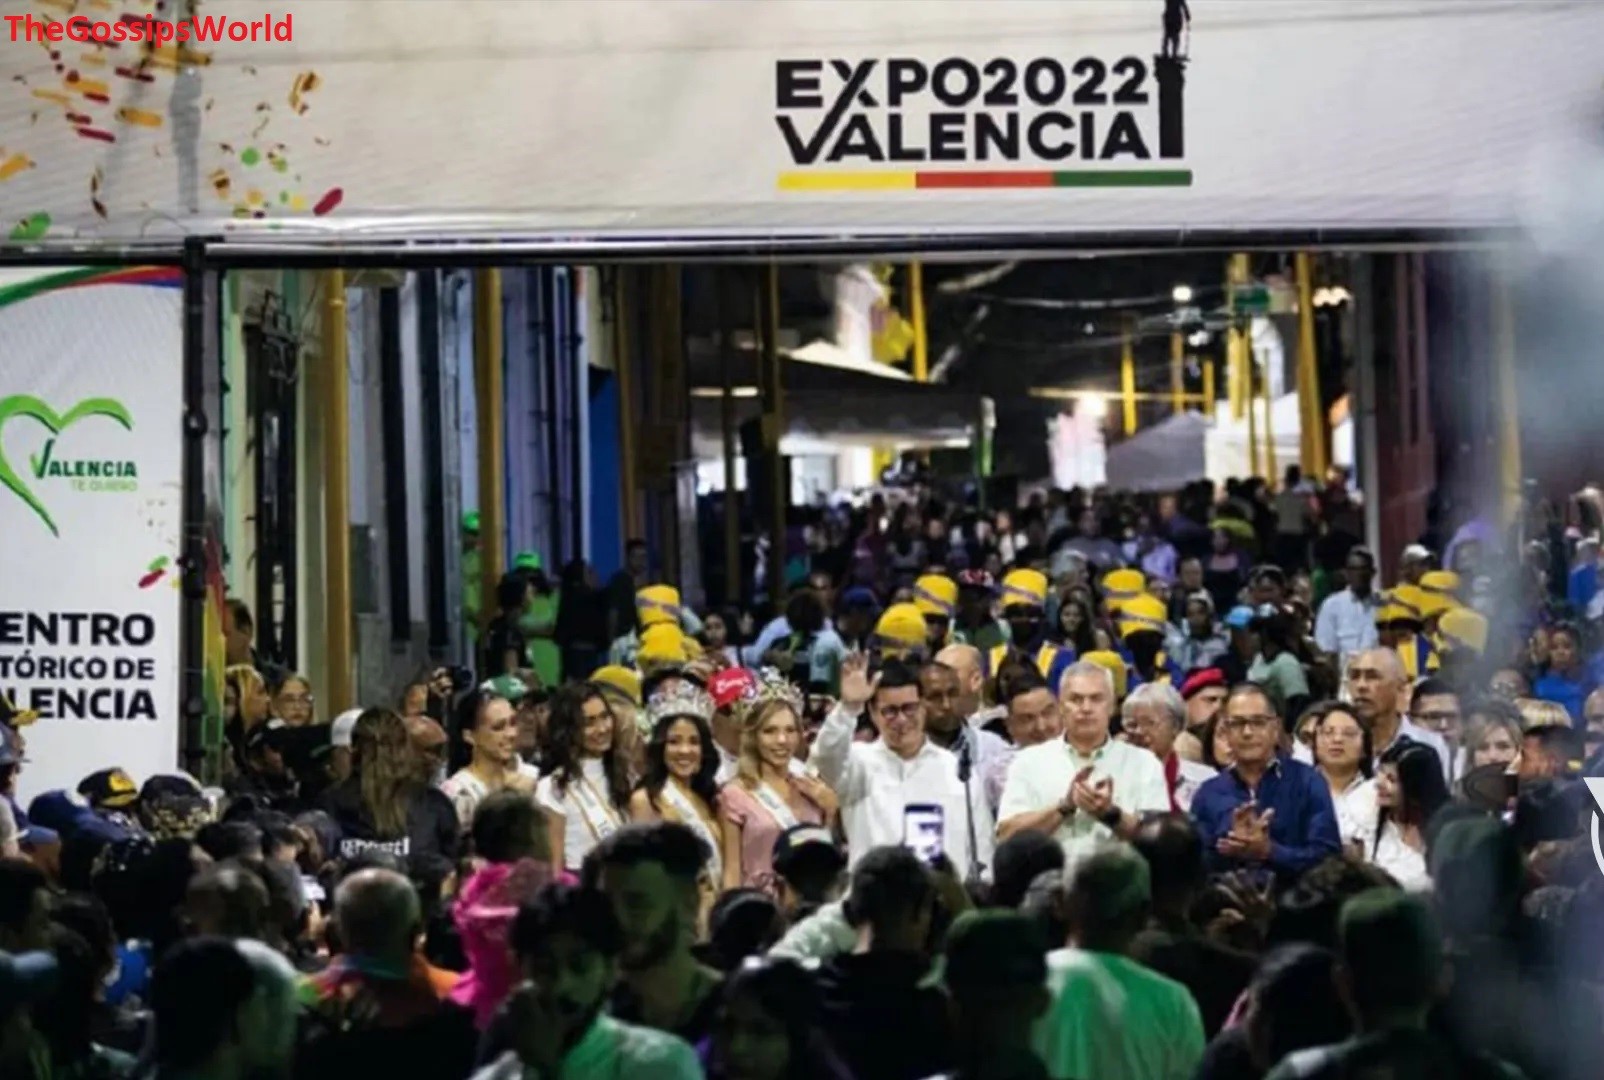 Expo Valencia 2022 Viral Video